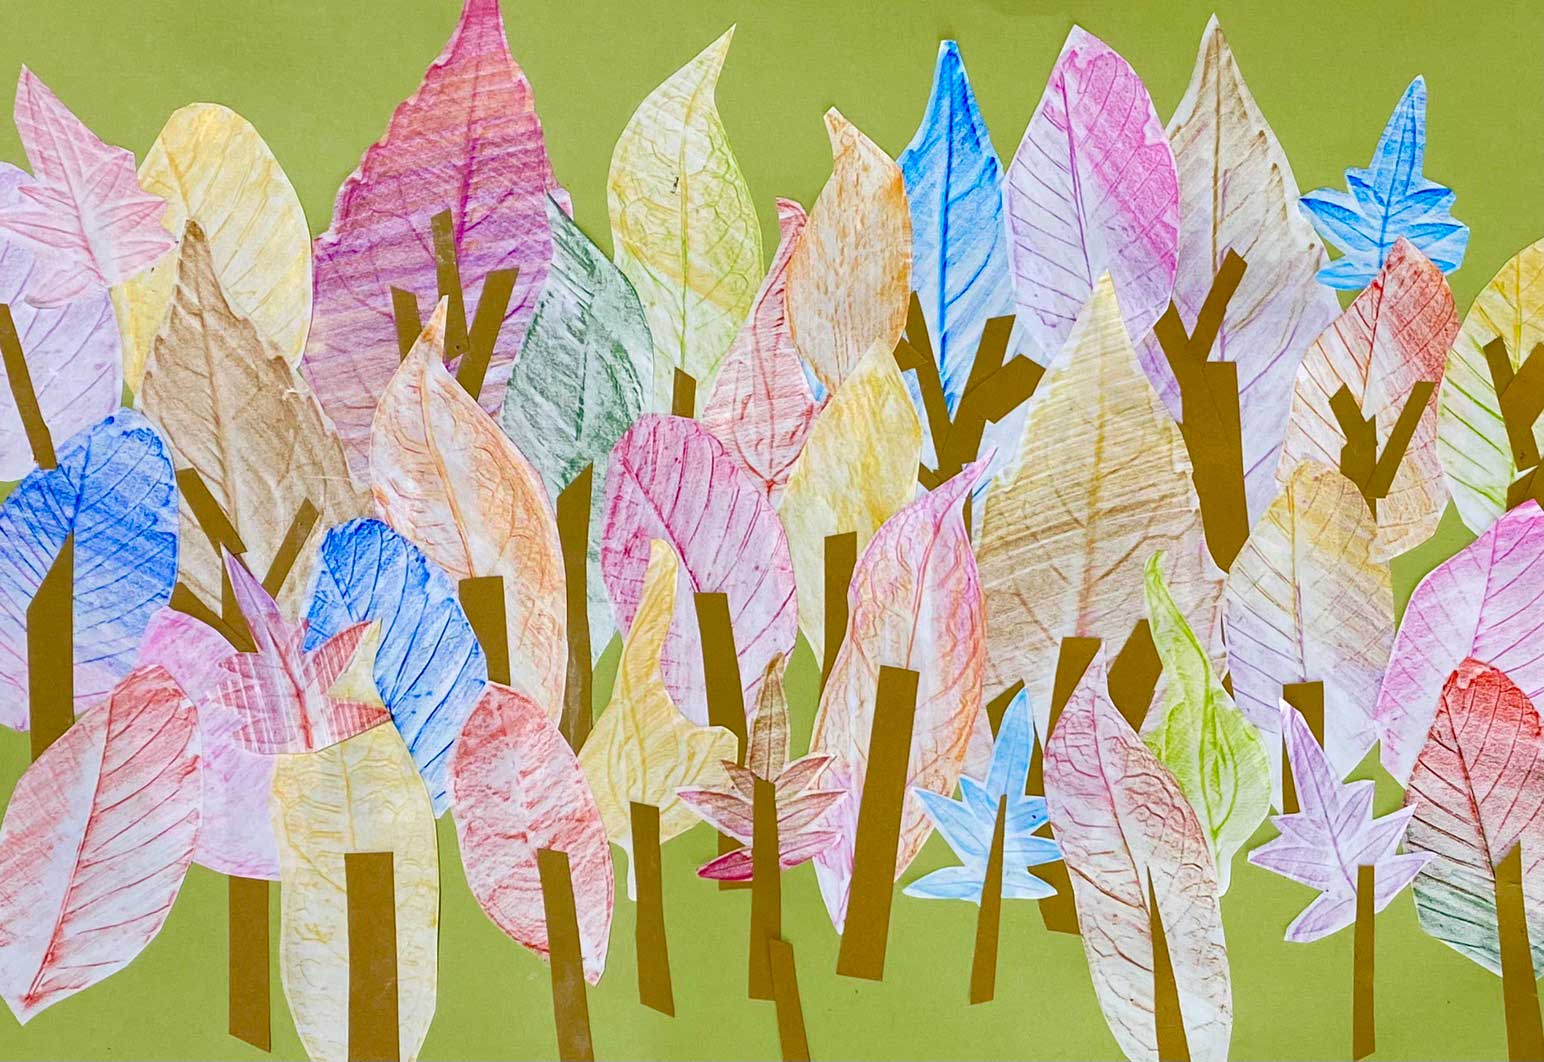 【参考作品】落ち葉のフロッタージュ秋の森・イメージ